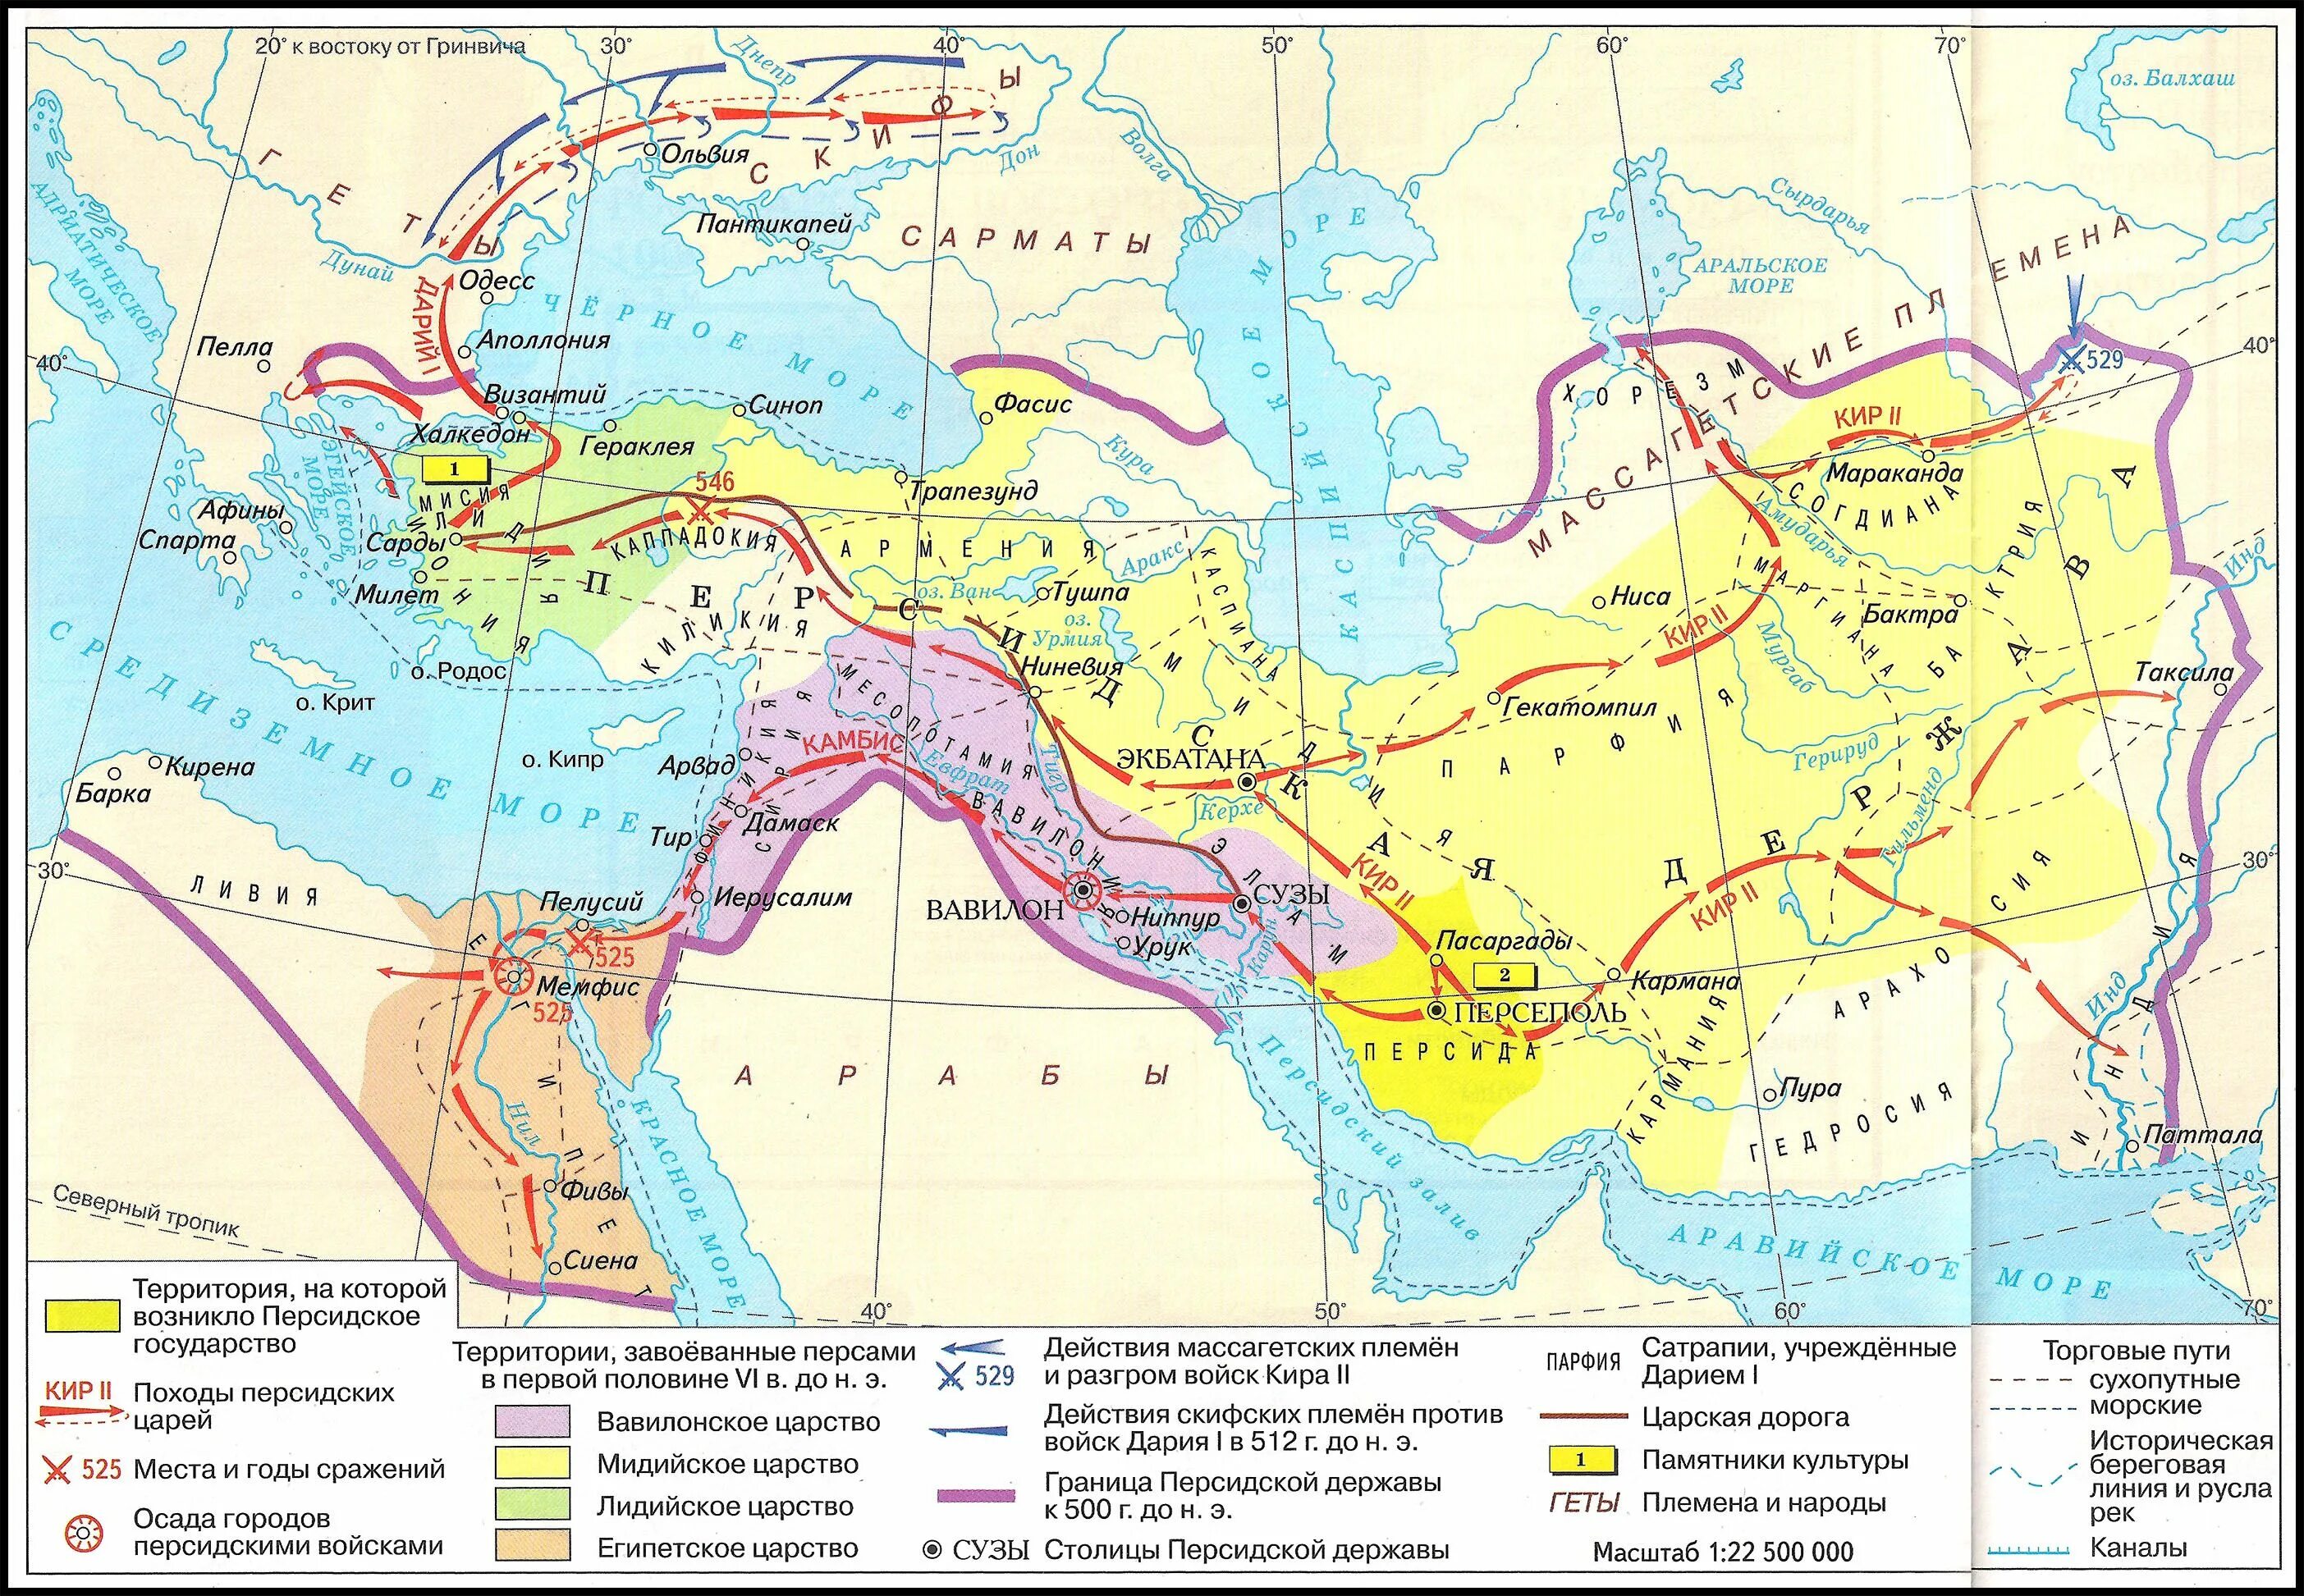 Персидская держава на карте 5. Персидская держава 550-330 гг до н э.